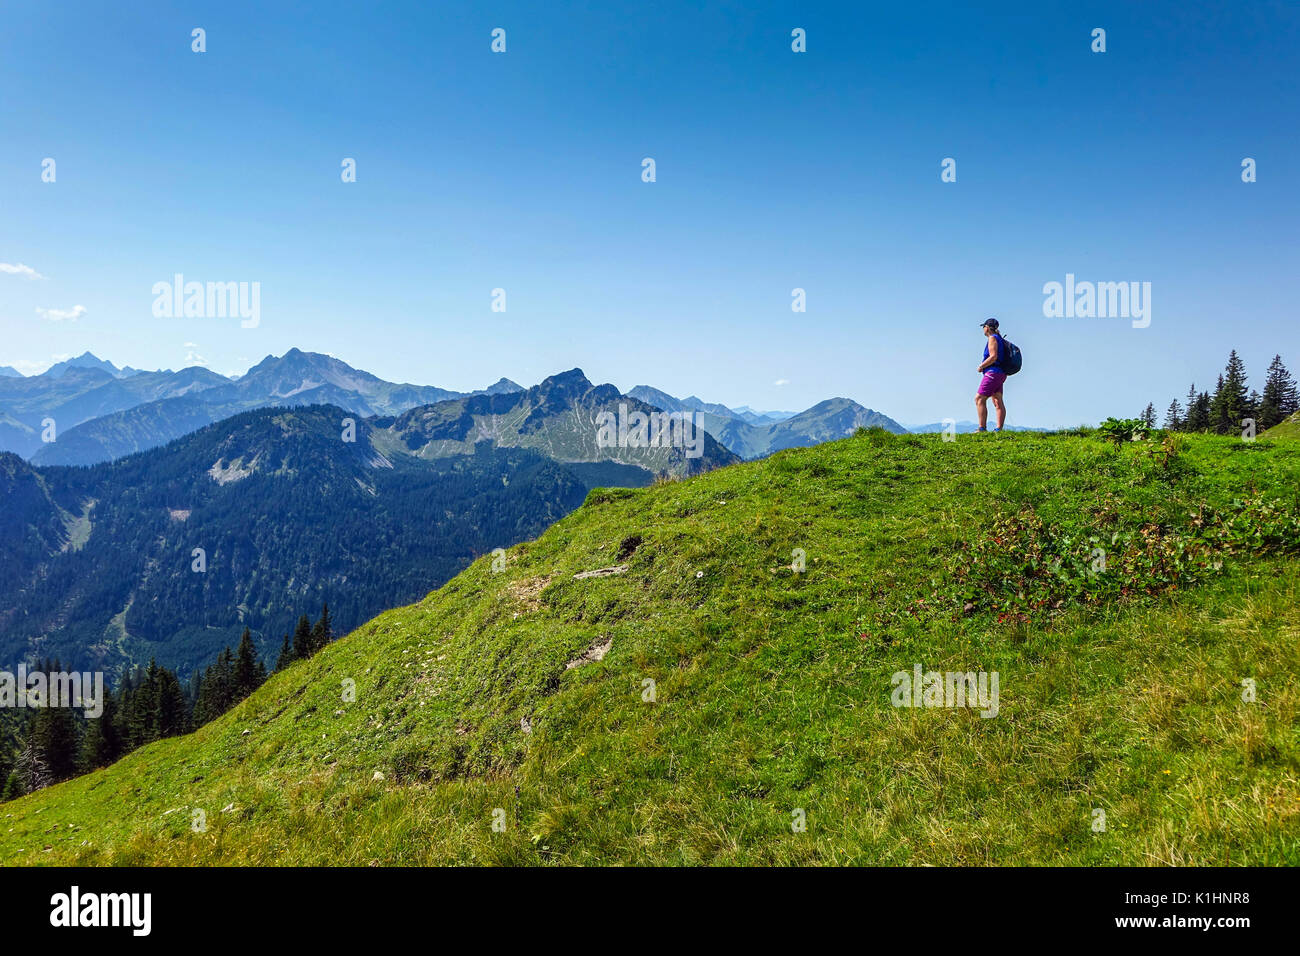 Femmina escursionista walker con zaino in spalla al di sopra di Pfronten, Germania Foto Stock